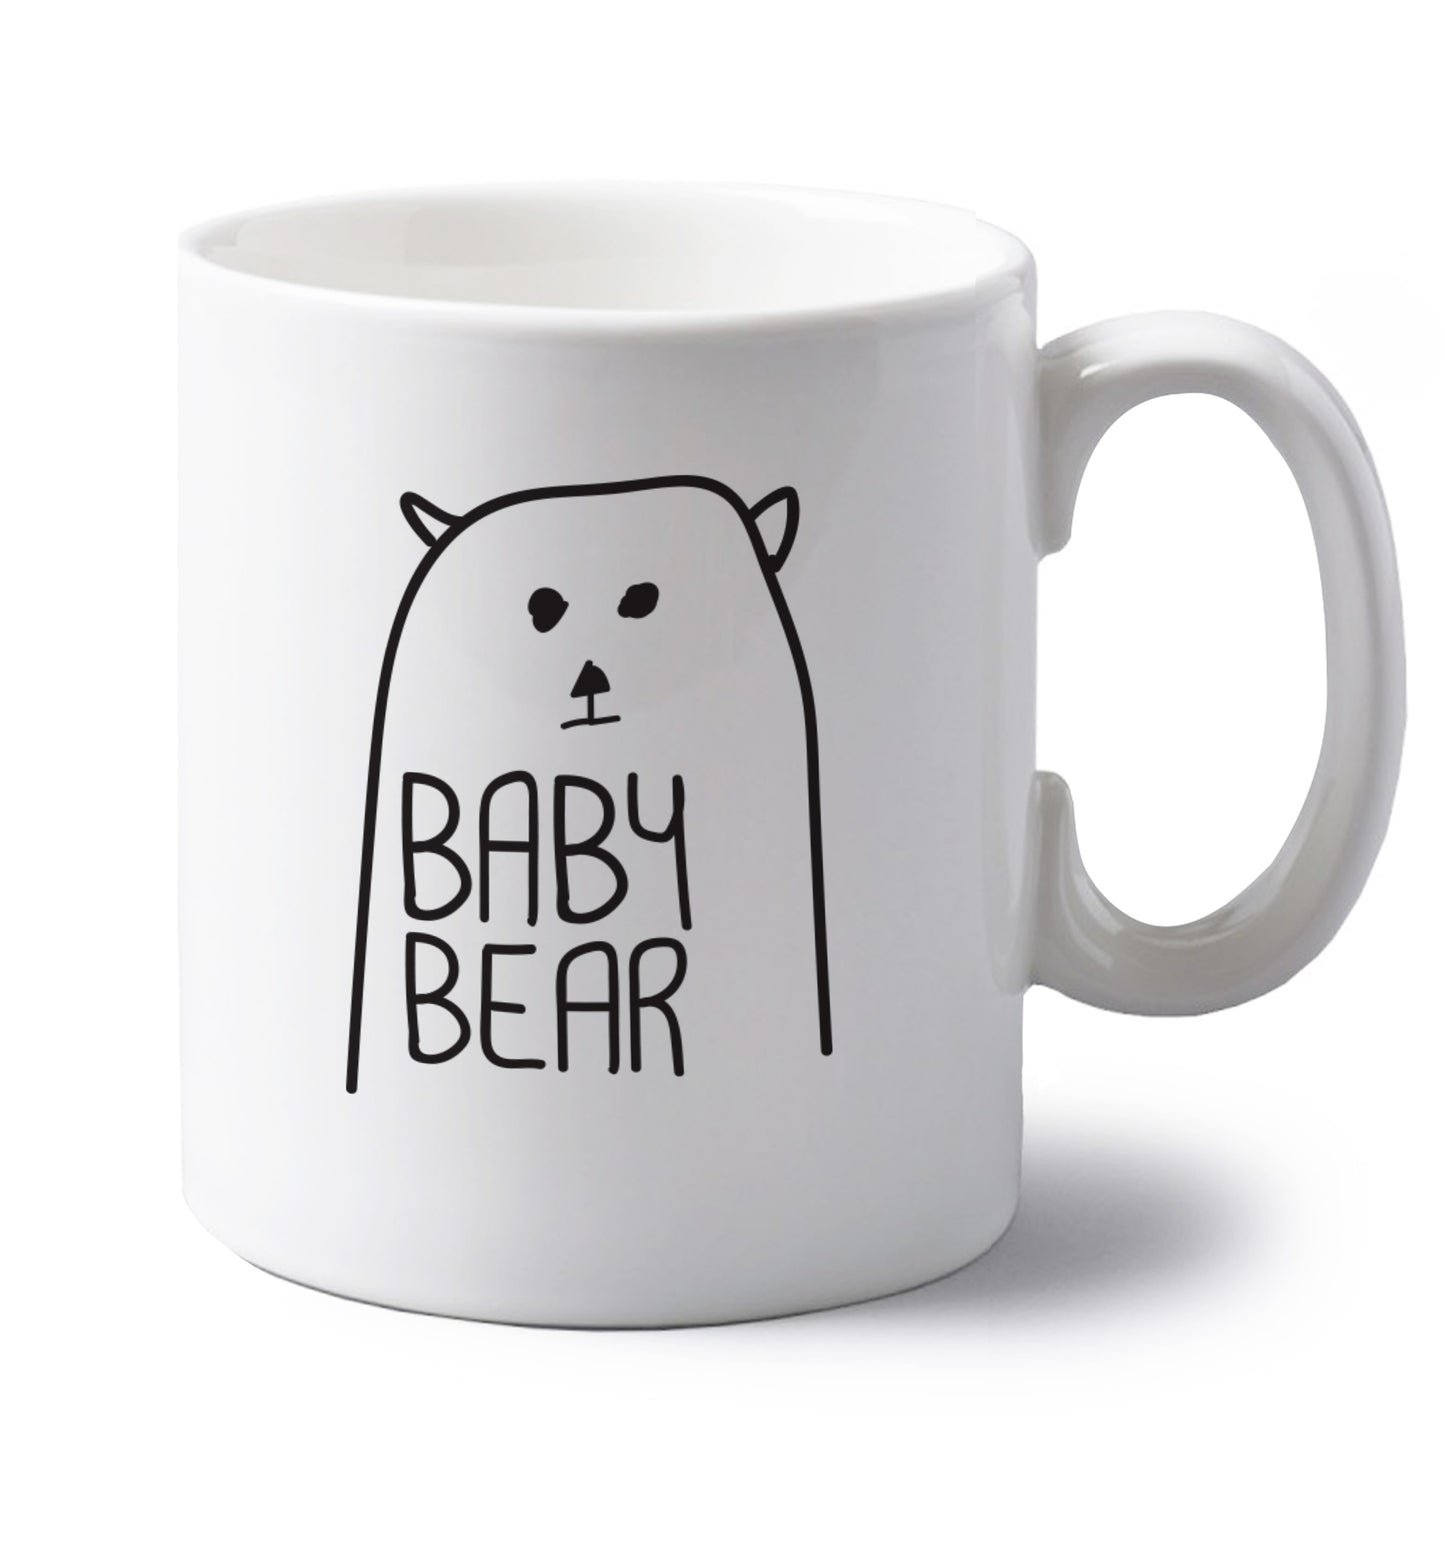 Baby bear left handed white ceramic mug 